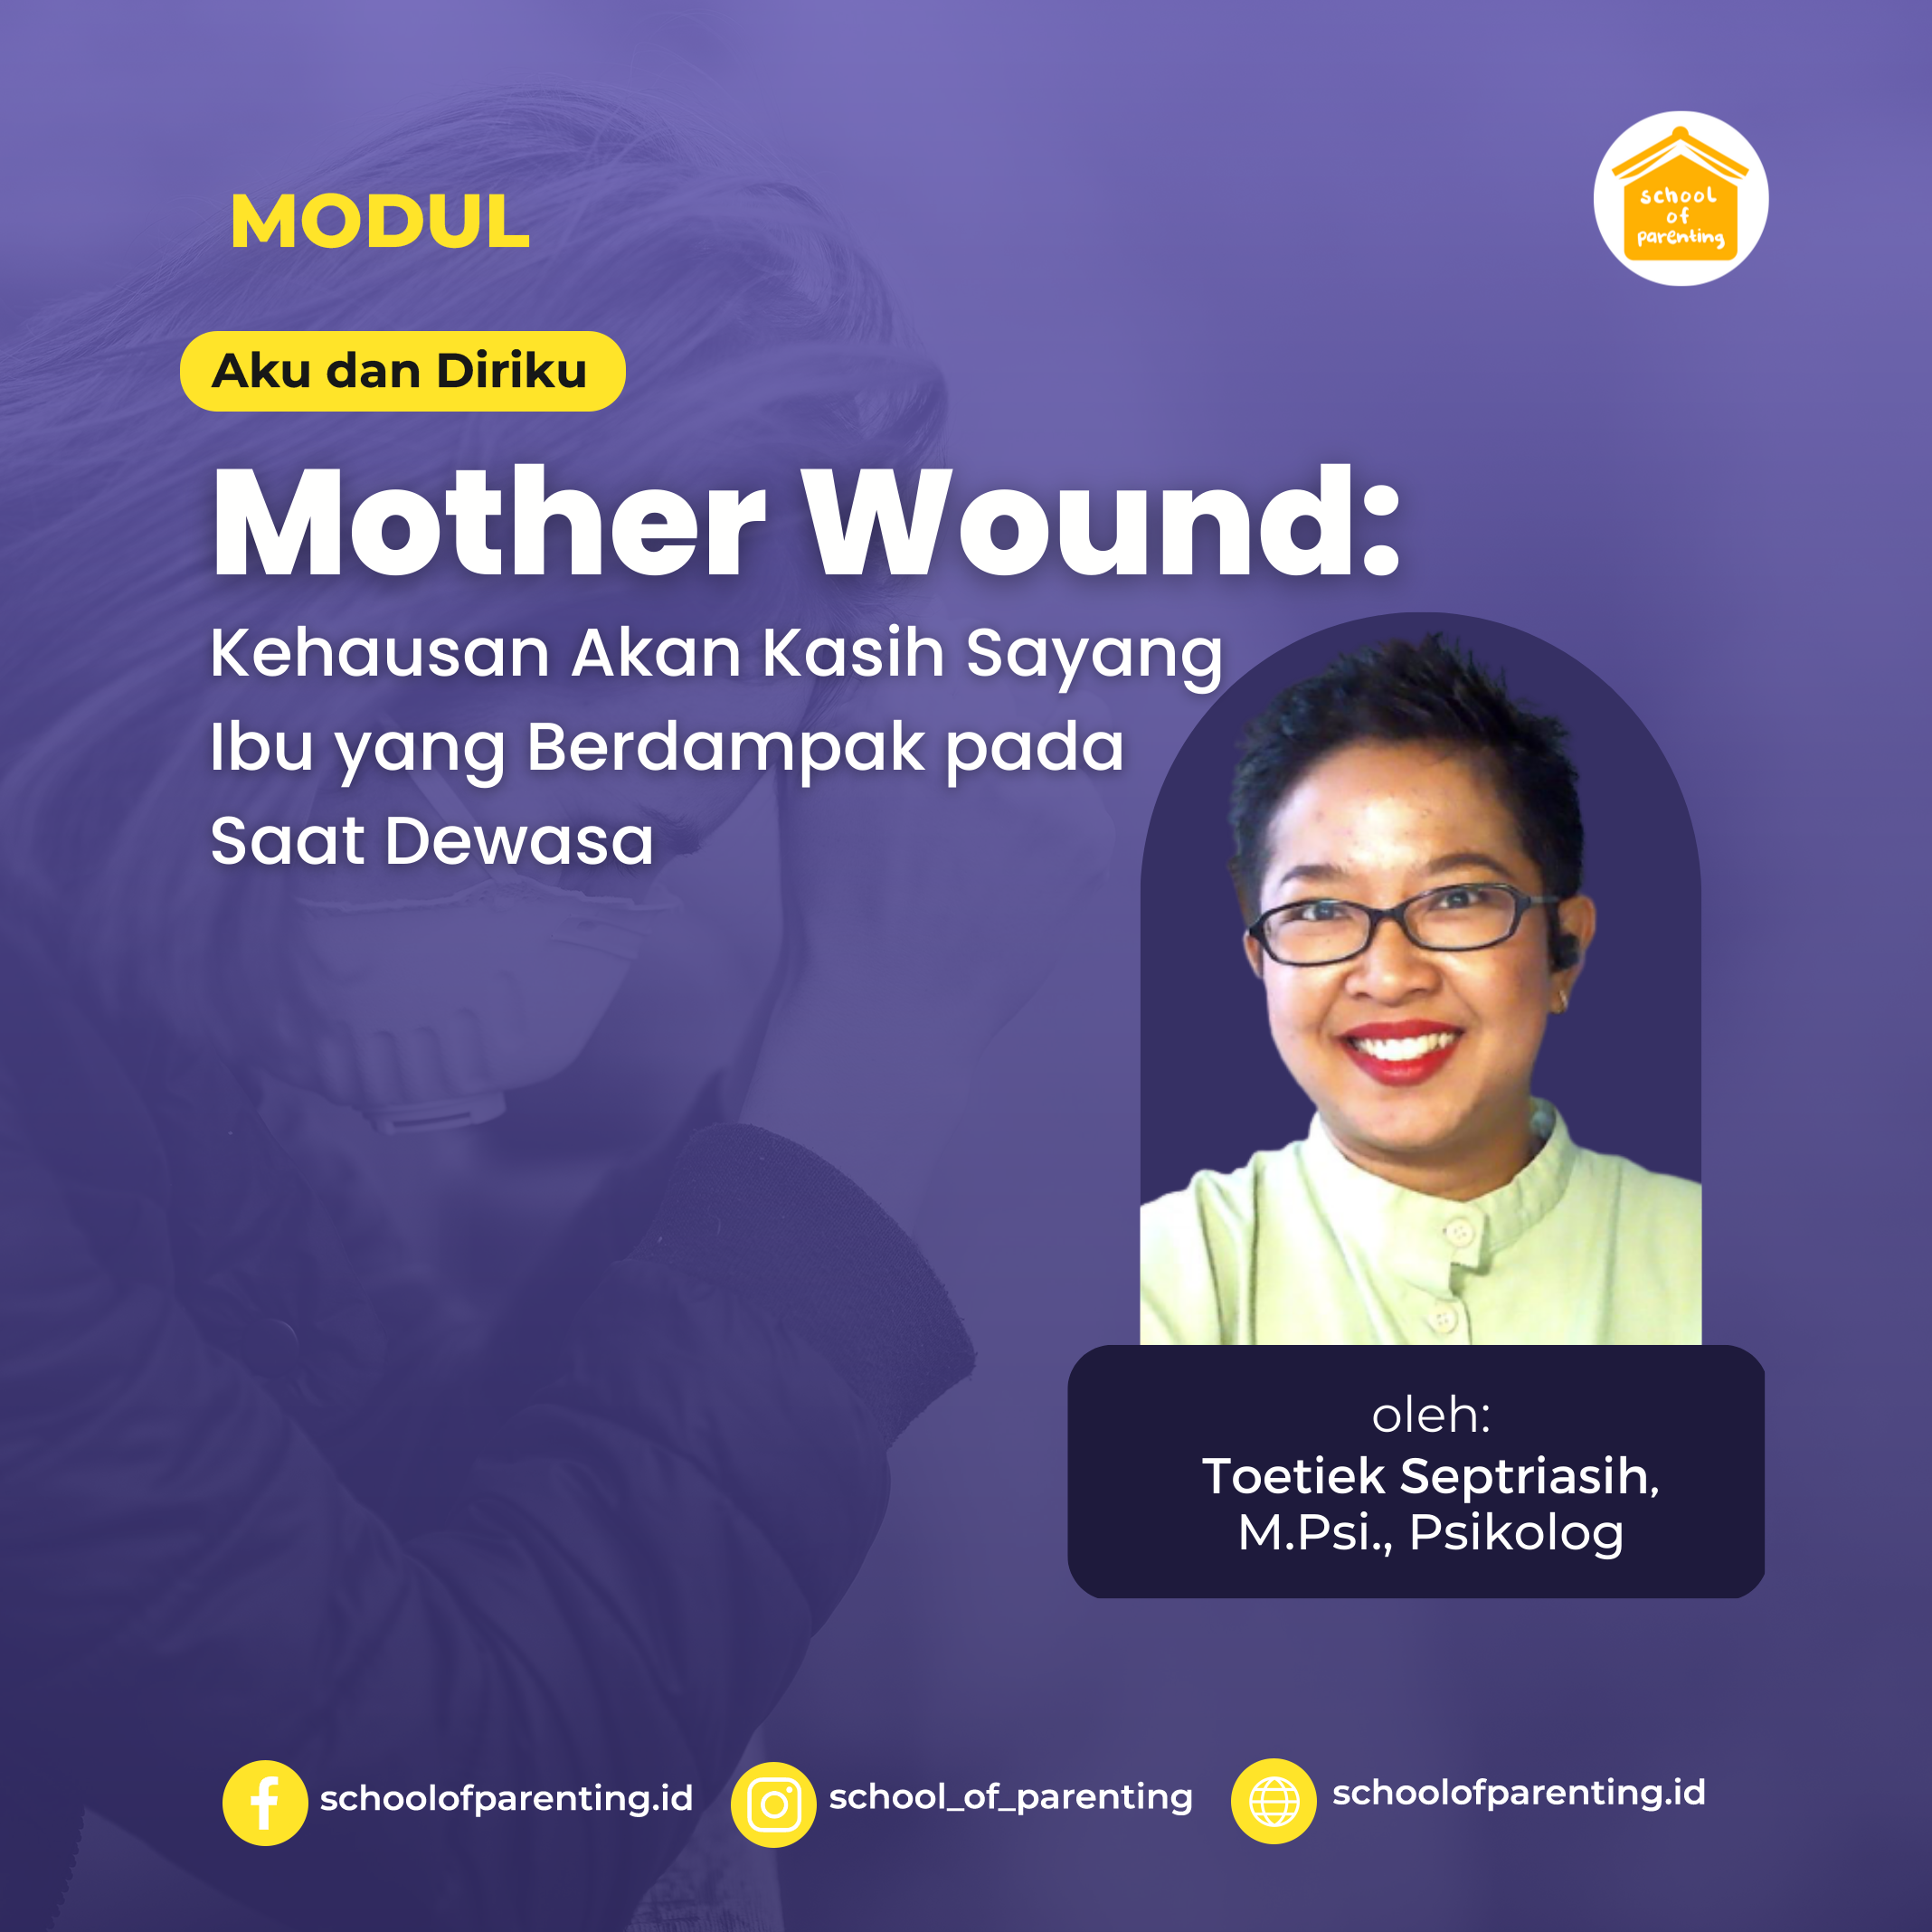 Mother Wound : Kehausan Akan Kasih Sayang Ibu yang Berdampak pada Saat Dewasa